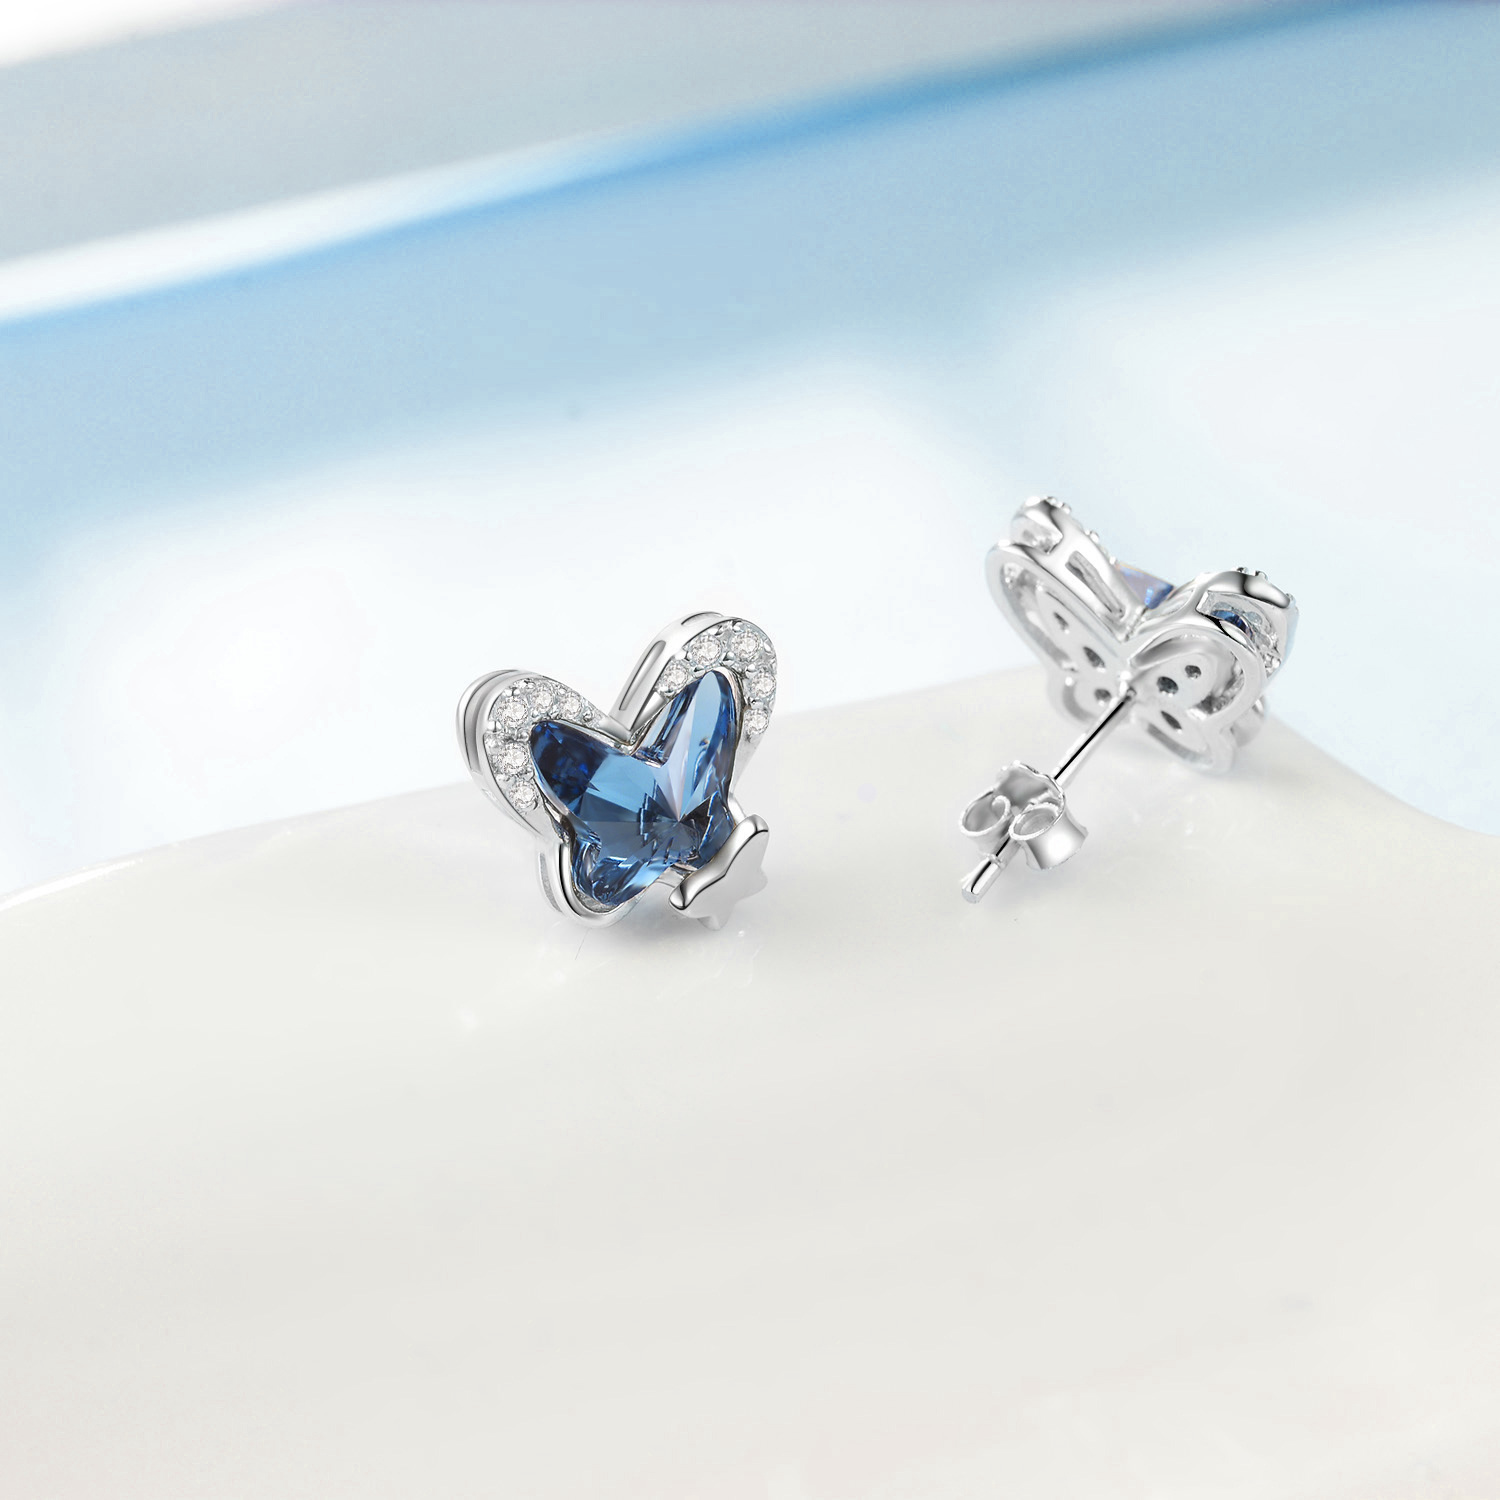 aec8b2609a25495d10fa256d07d3d736PYE03583 - 925 Sterling Silver Butterfly Stud Earrings Hypoallergenic Earring Fine Jewelry Gift for Women Girls